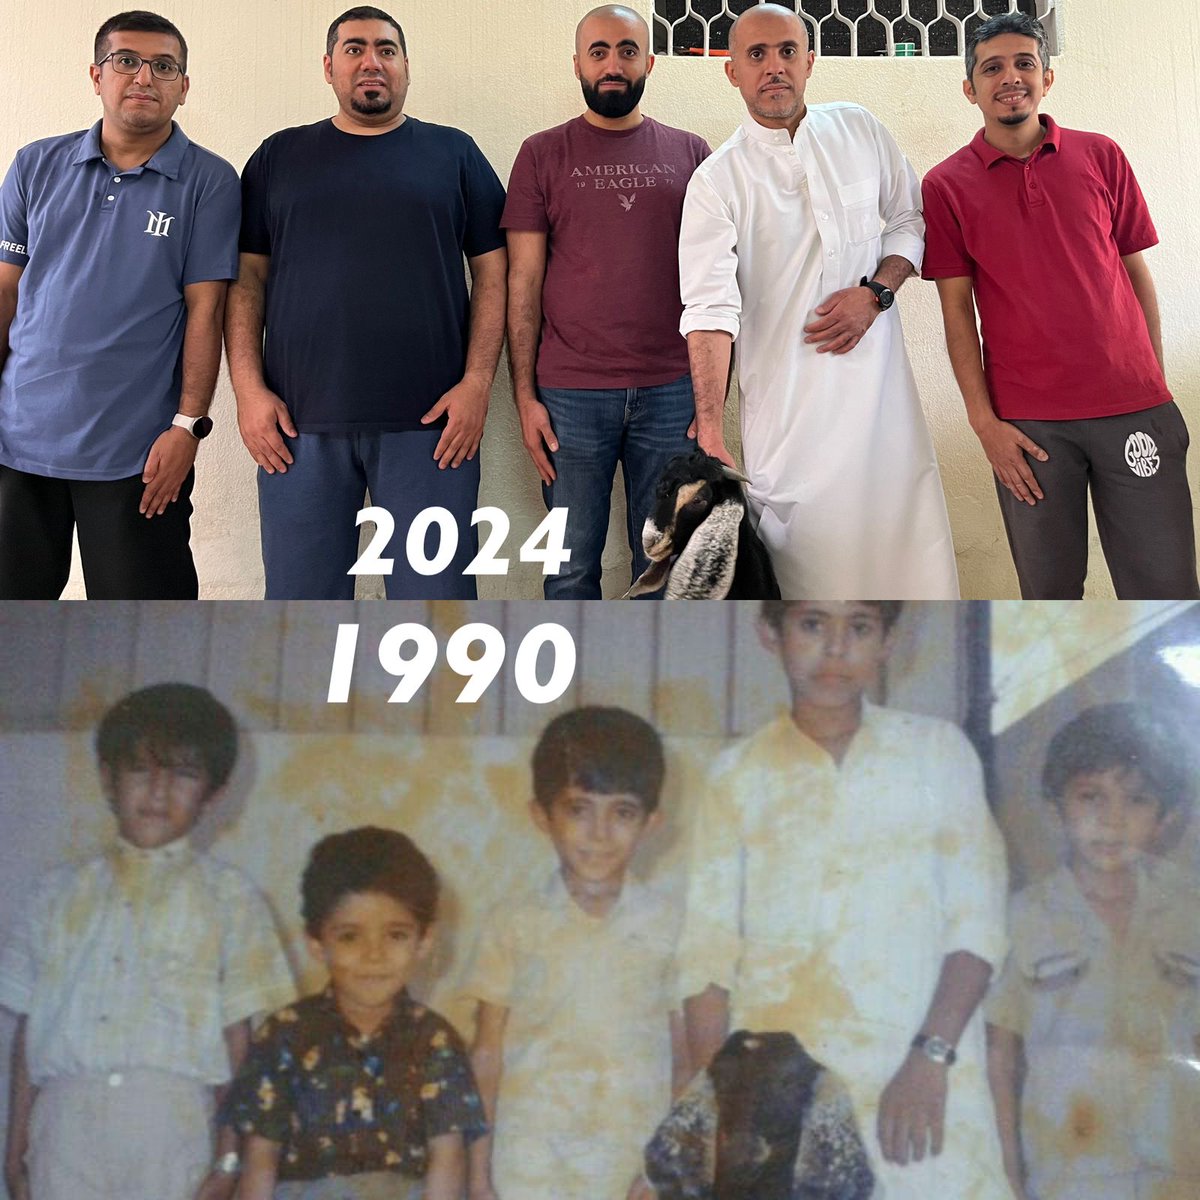 من الخاص📩 . . صورة بين زمنين عيد الرياض عام 1990 وعيد الرياض عام 2024 الصورة تجمع أخوان وأبناء عمومة قبل 34 سنة